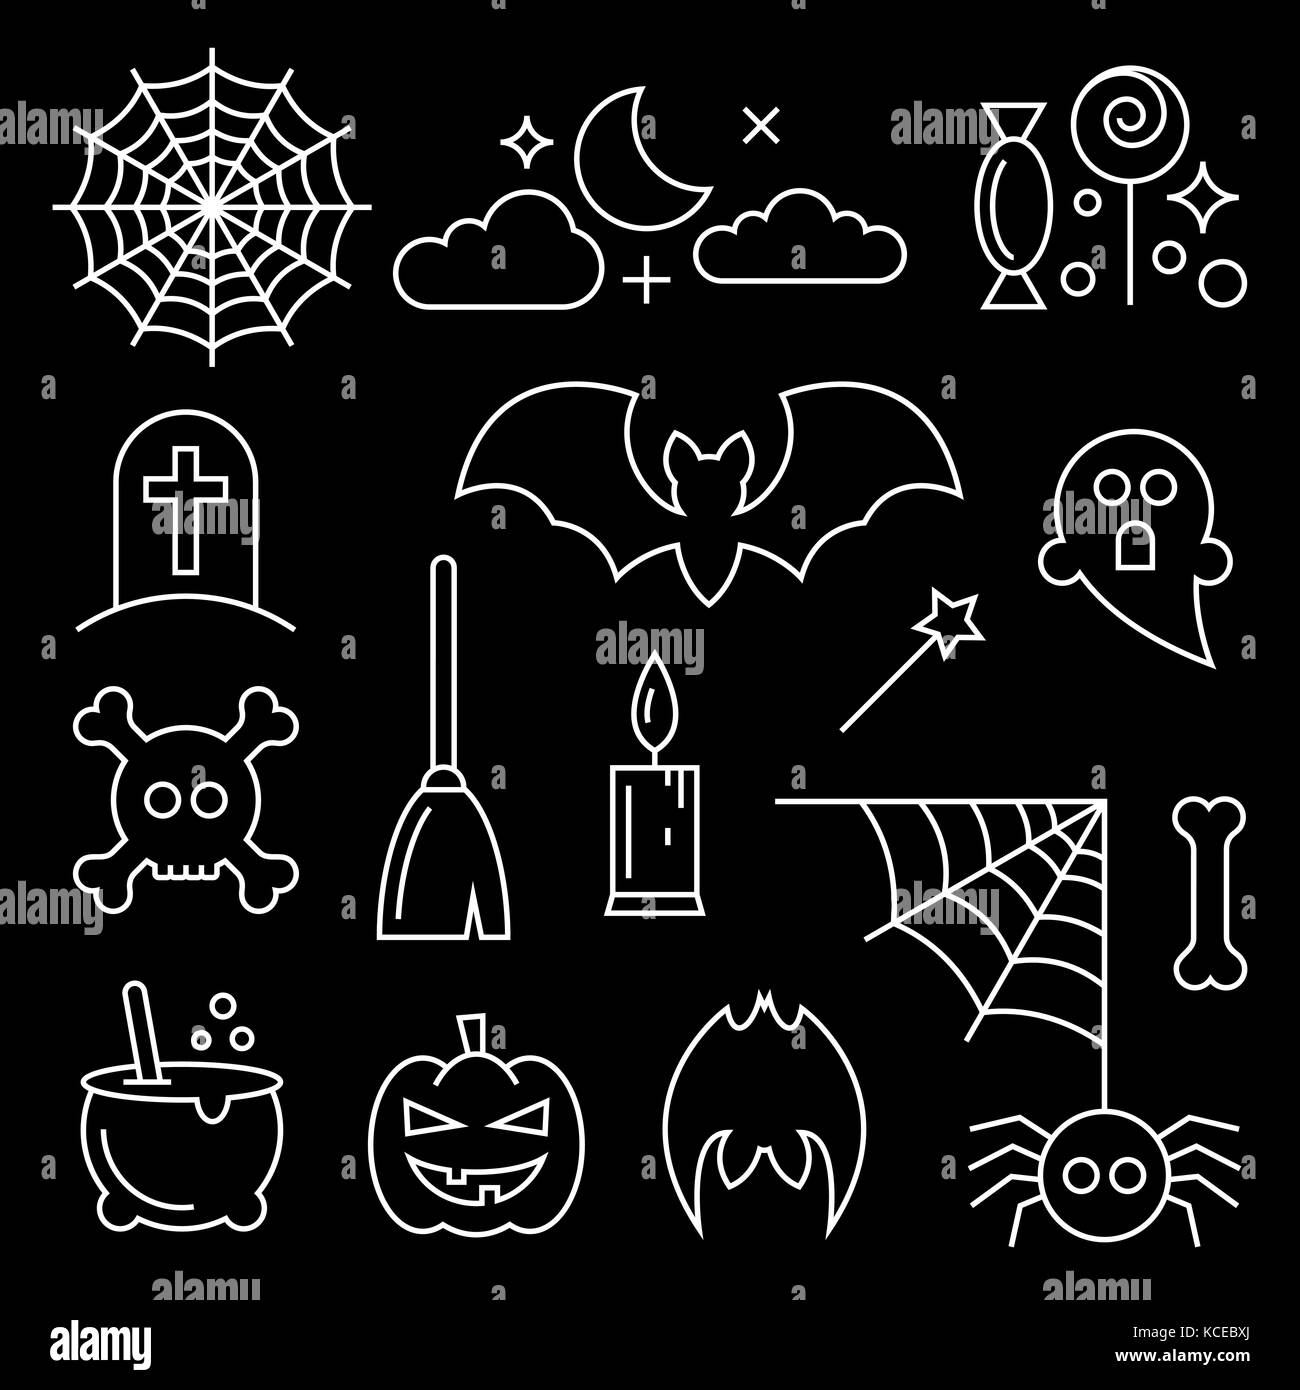 Fine ligne halloween icons set. vector illustration d'araignée, la lune, les gâteries, tombe, bat, ghost, du crâne, de genêts et d'autres éléments pour votre conception Illustration de Vecteur